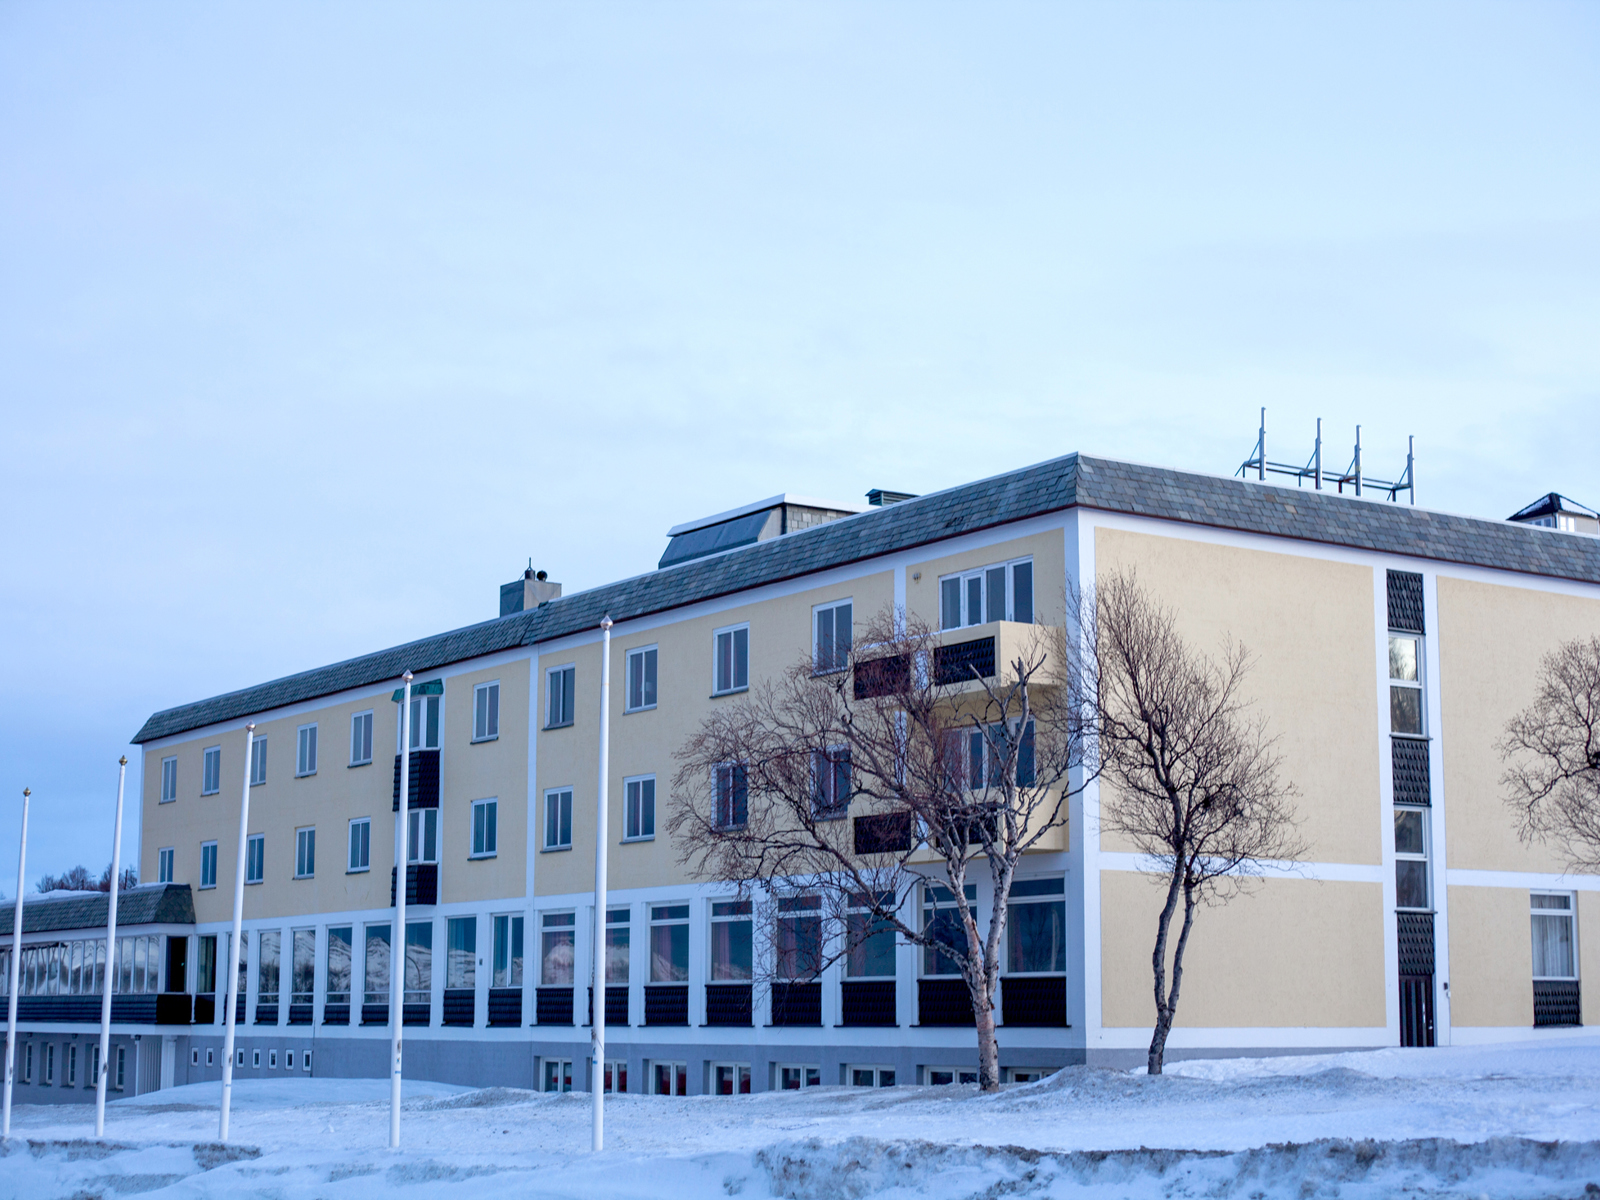 Et hotell kledd i snø